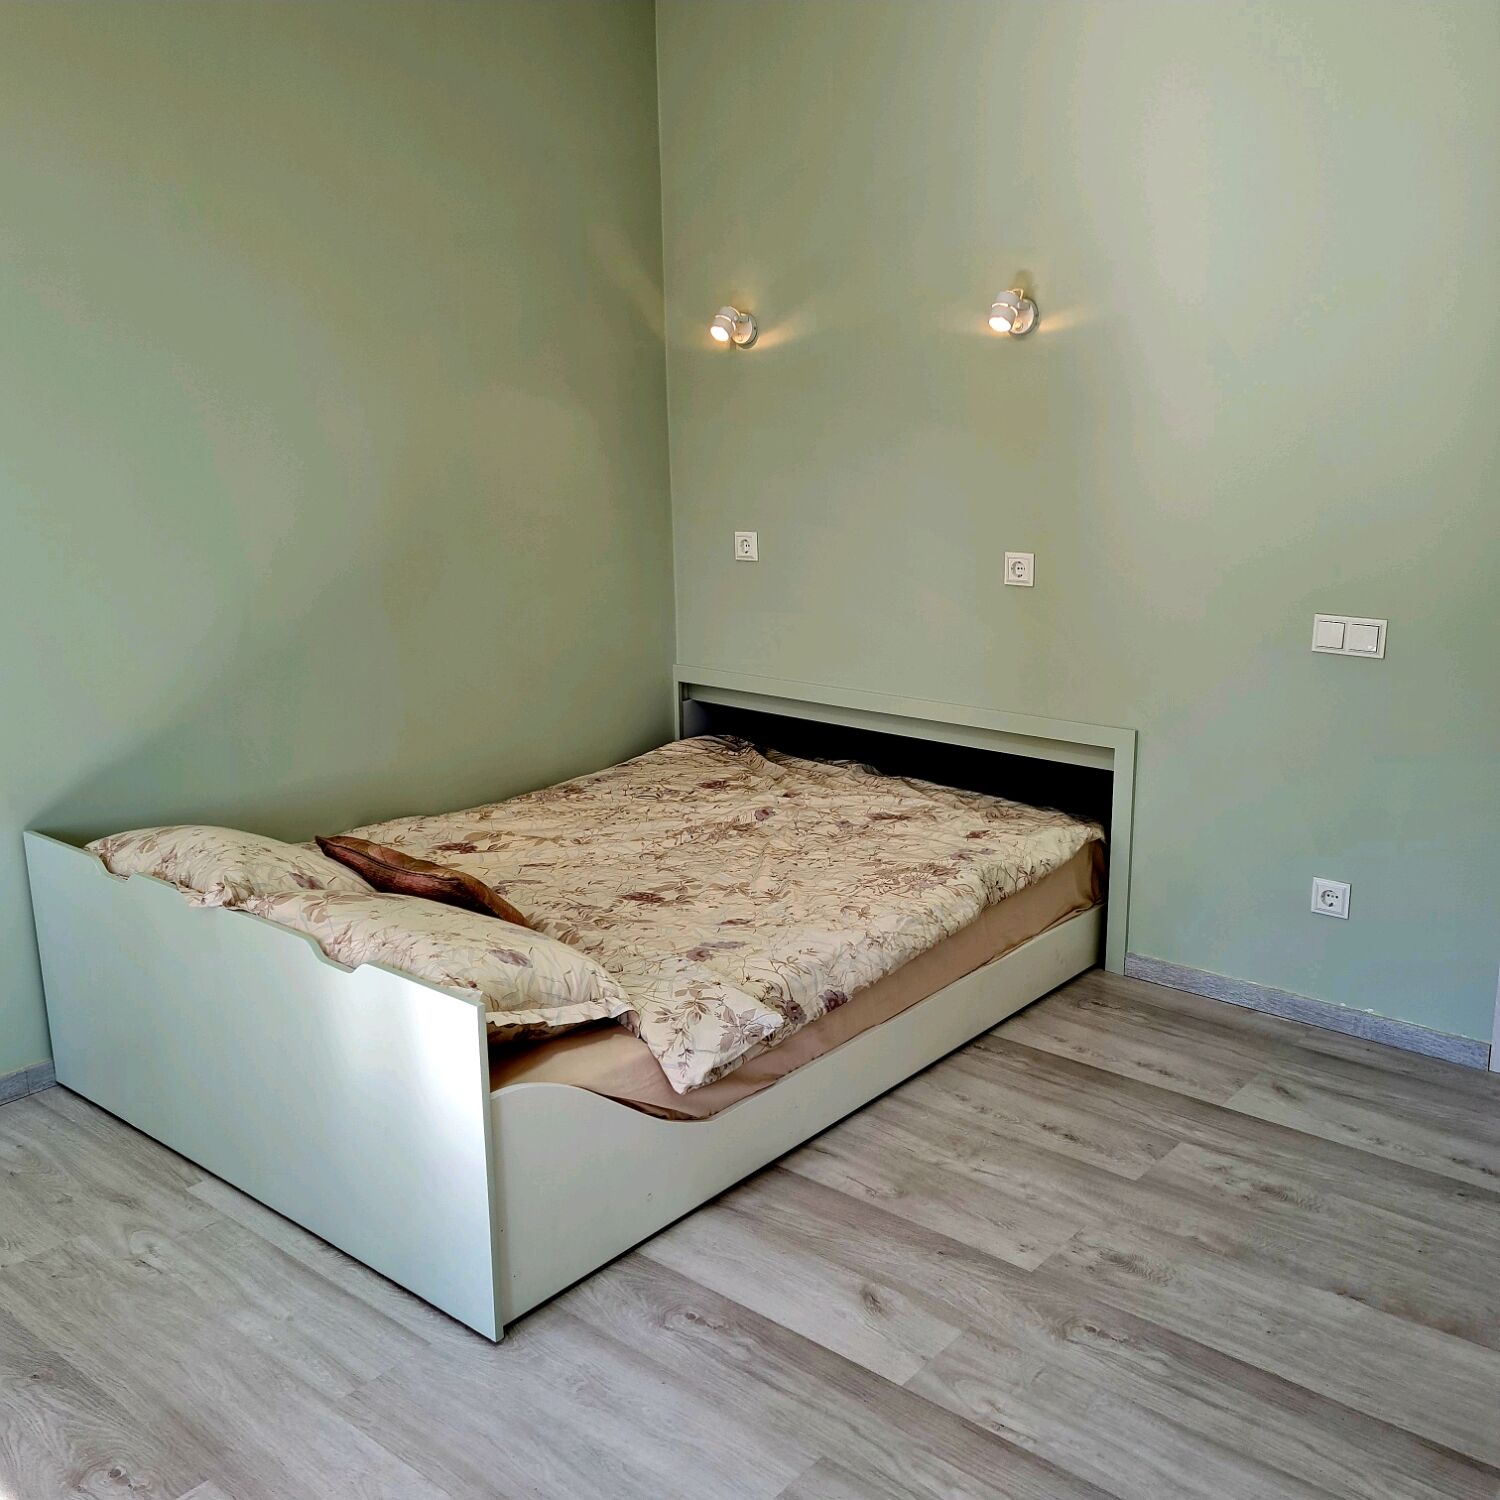 Выдвижные кровати для детей, купить детскую выдвижную кровать для двоих в Минске под заказ - фото